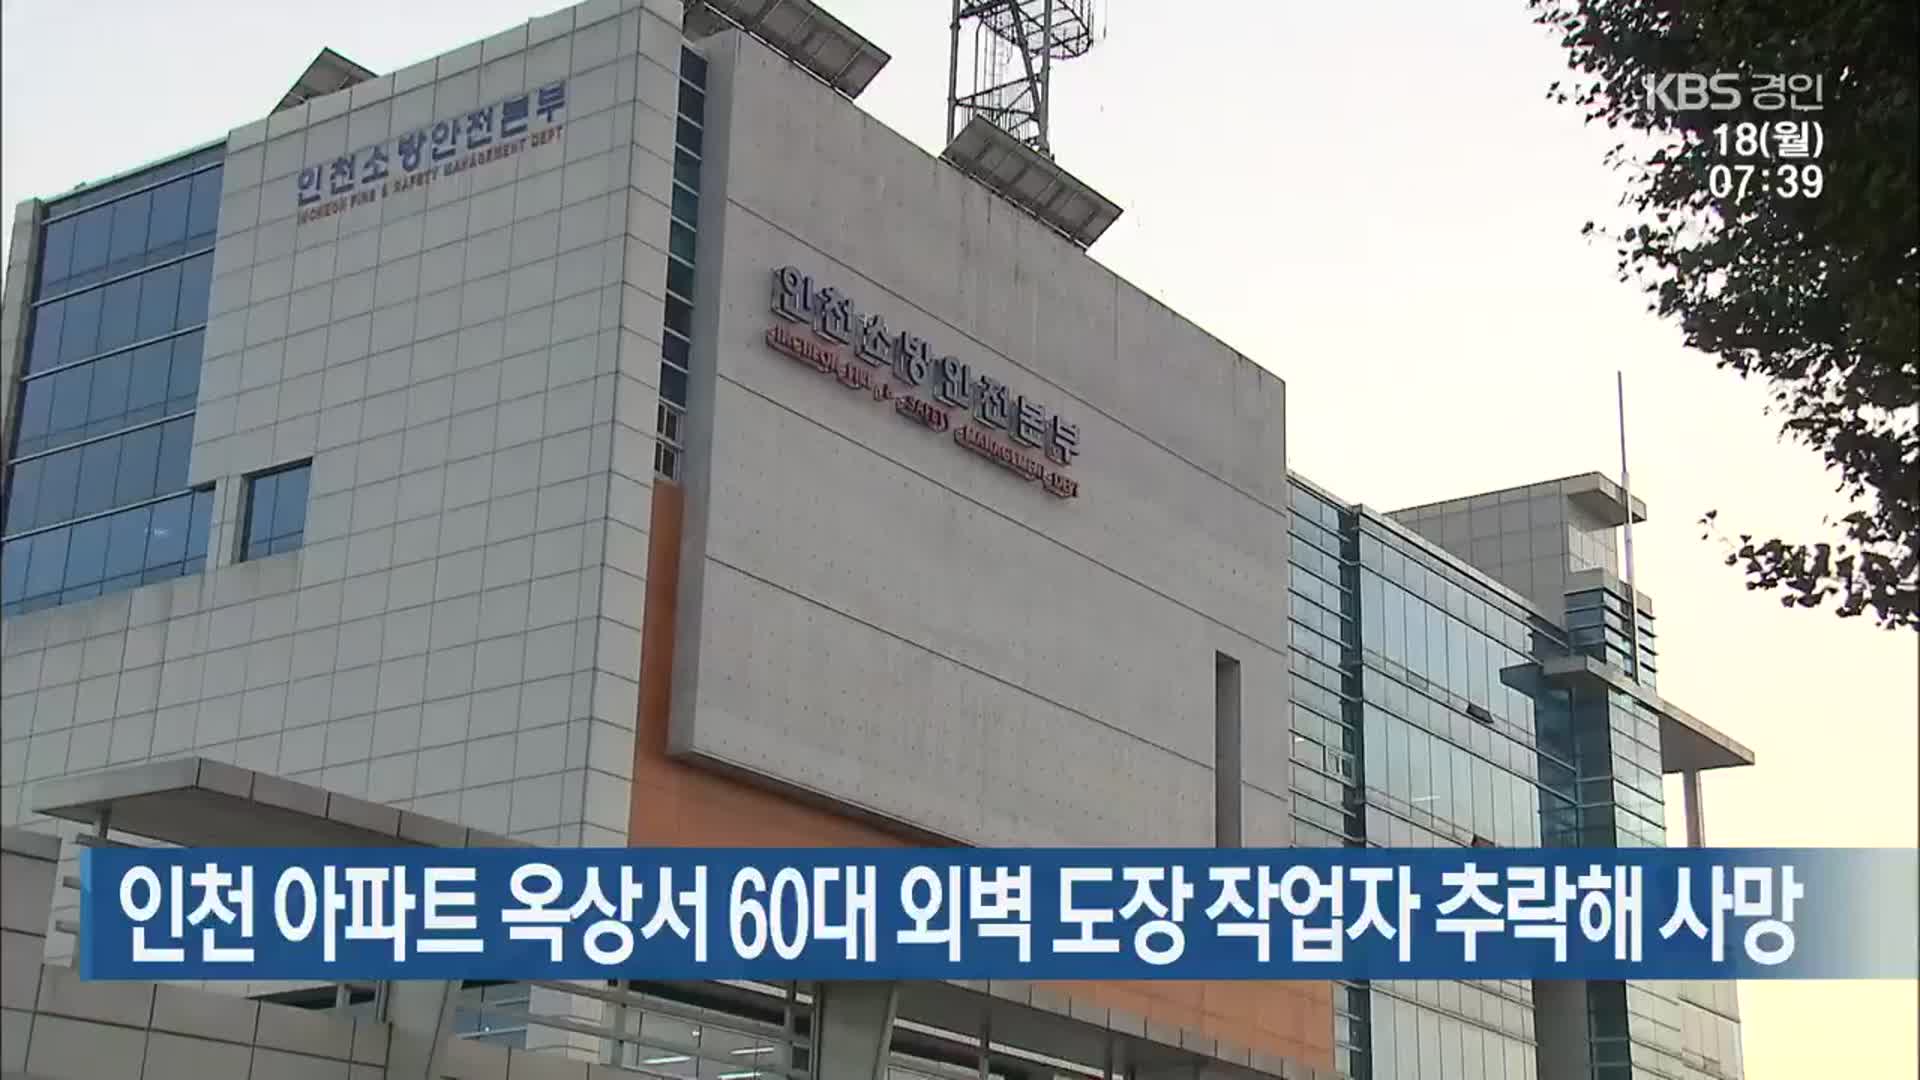 인천 아파트 옥상서 60대 외벽 도장 작업자 추락해 사망